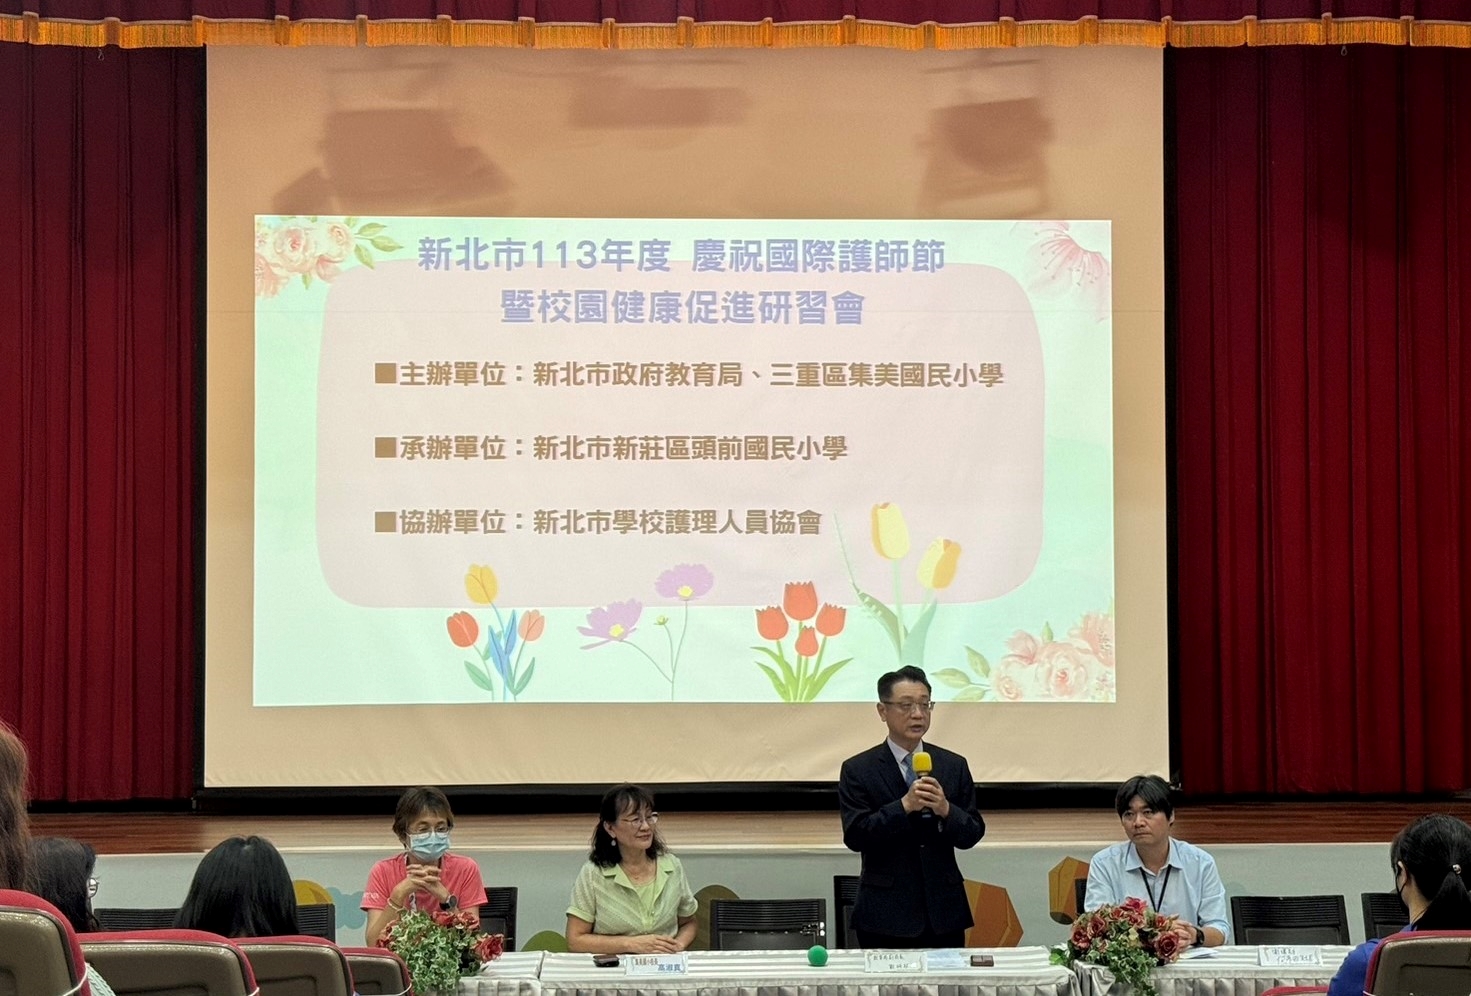 劉副局長表示，感謝校護們對學生健康的無微不至關懷_0.jpg